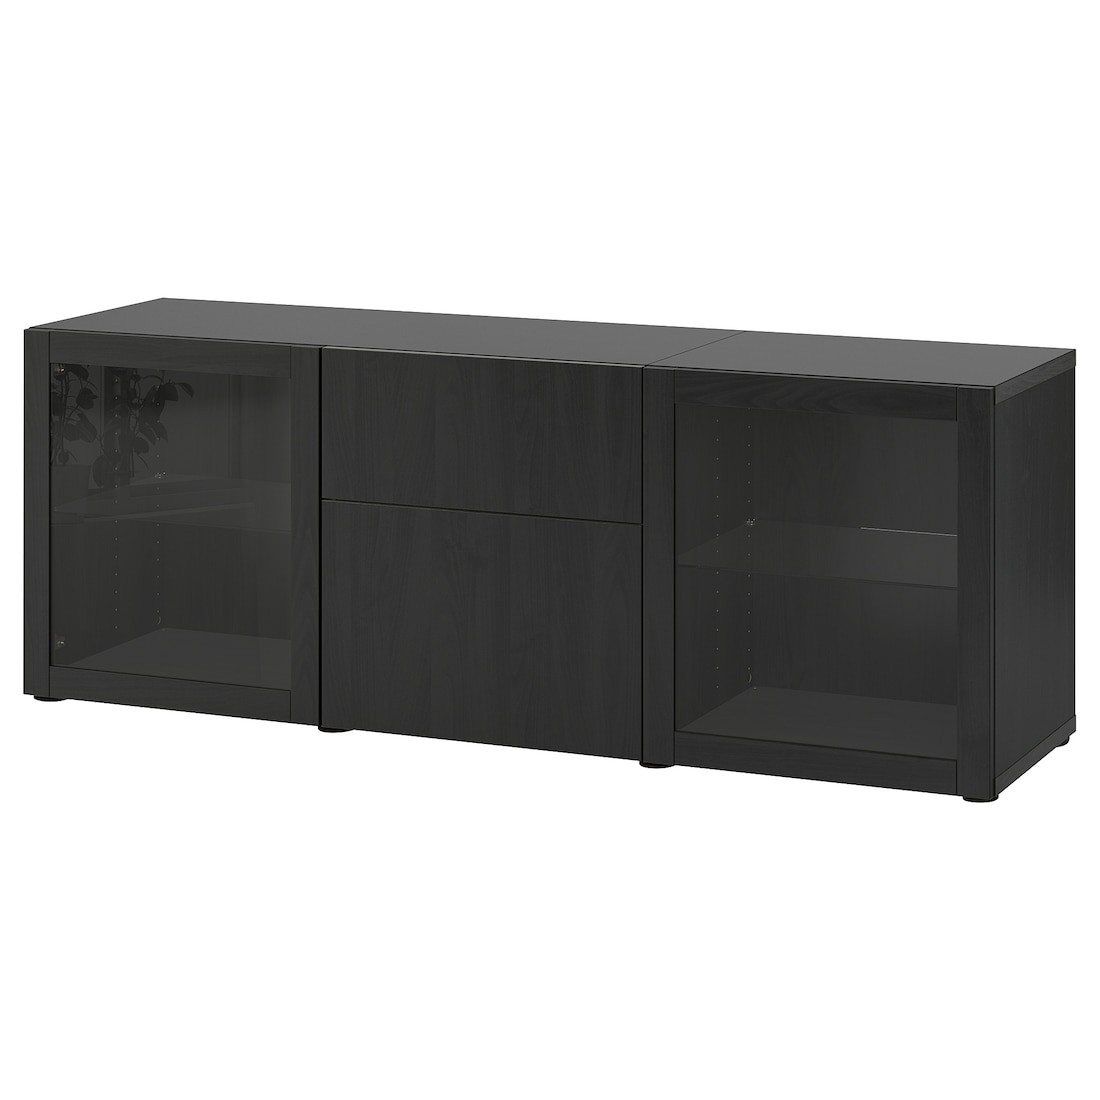 IKEA BESTÅ БЕСТО Комбинация для хранения с ящиками, черно-коричневый Lappviken / Sindvik черно-коричневое прозрачное стекло, 180x42x65 см 99412648 994.126.48